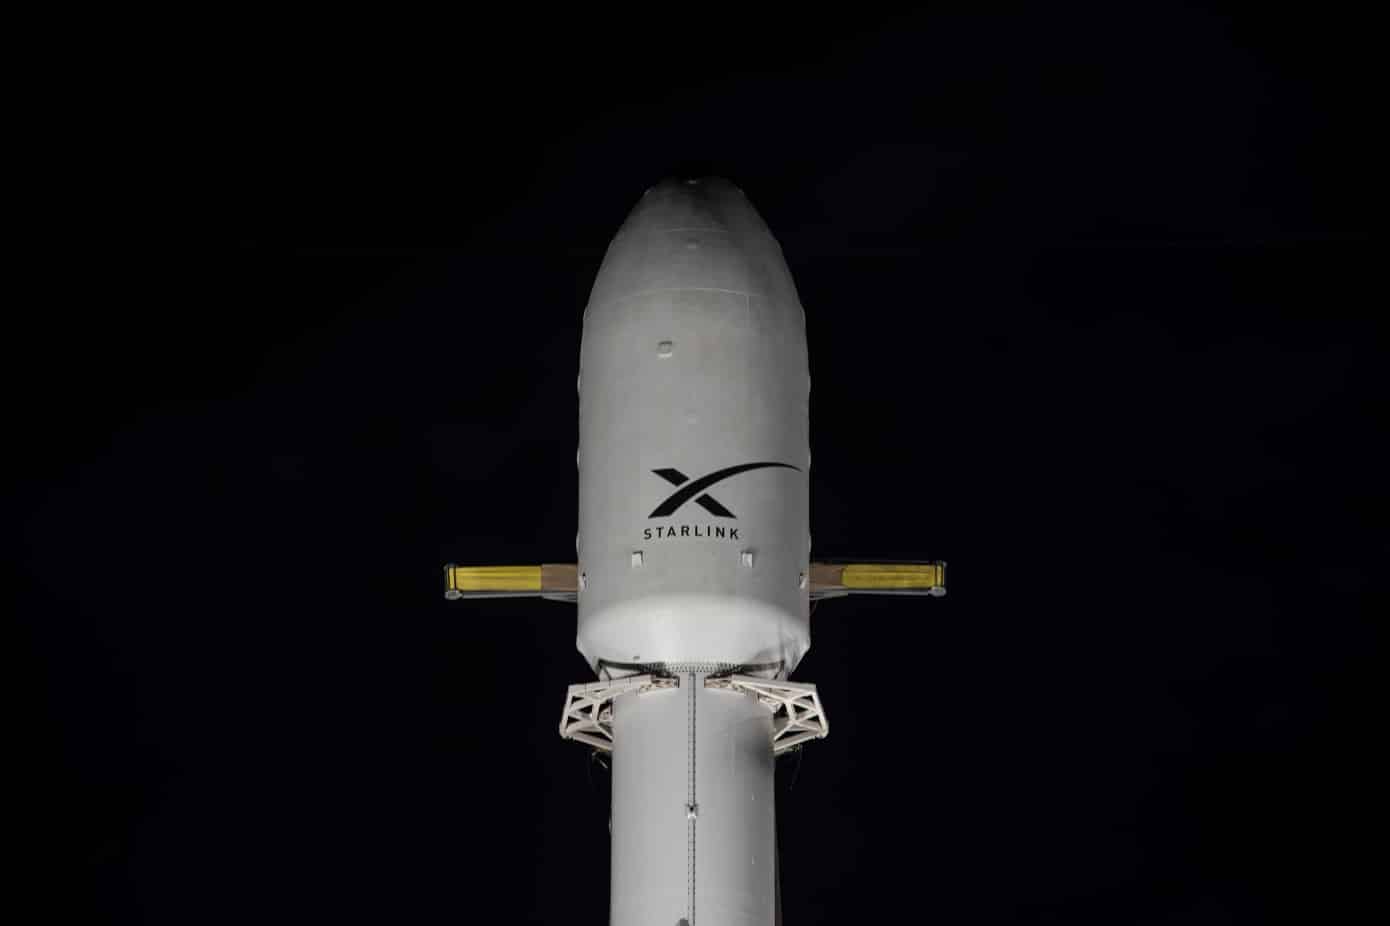 Aperçu de la fusée Falcon 9 prête à envoyer des satellites Starlink.